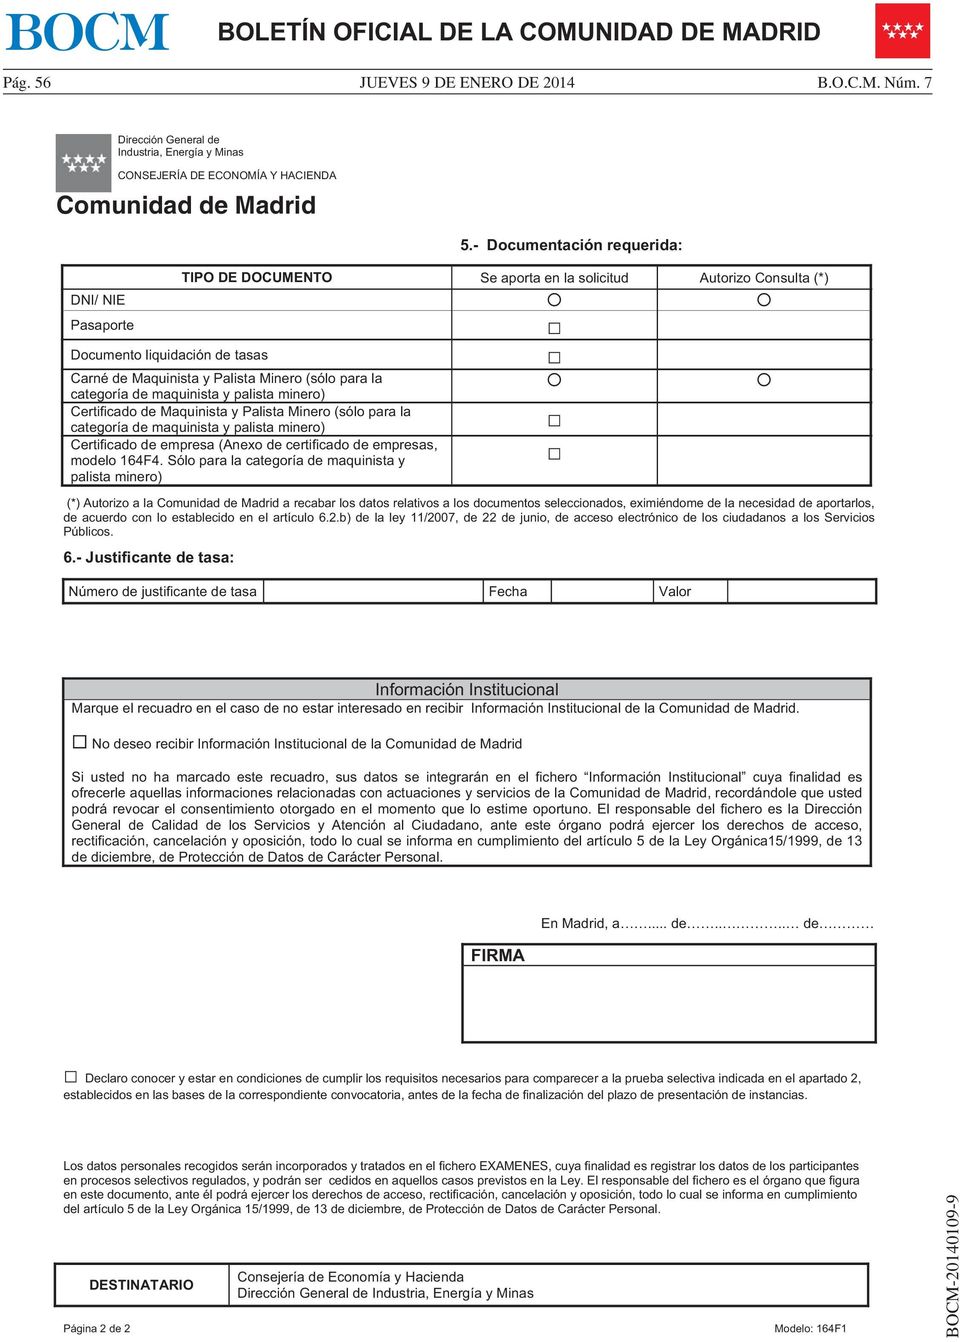 Comunidad de Madrid Documento liquidación de tasas Carné de Maquinista y Palista Minero (sólo para la categoría de maquinista y palista minero) Certificado de Maquinista y Palista Minero (sólo para